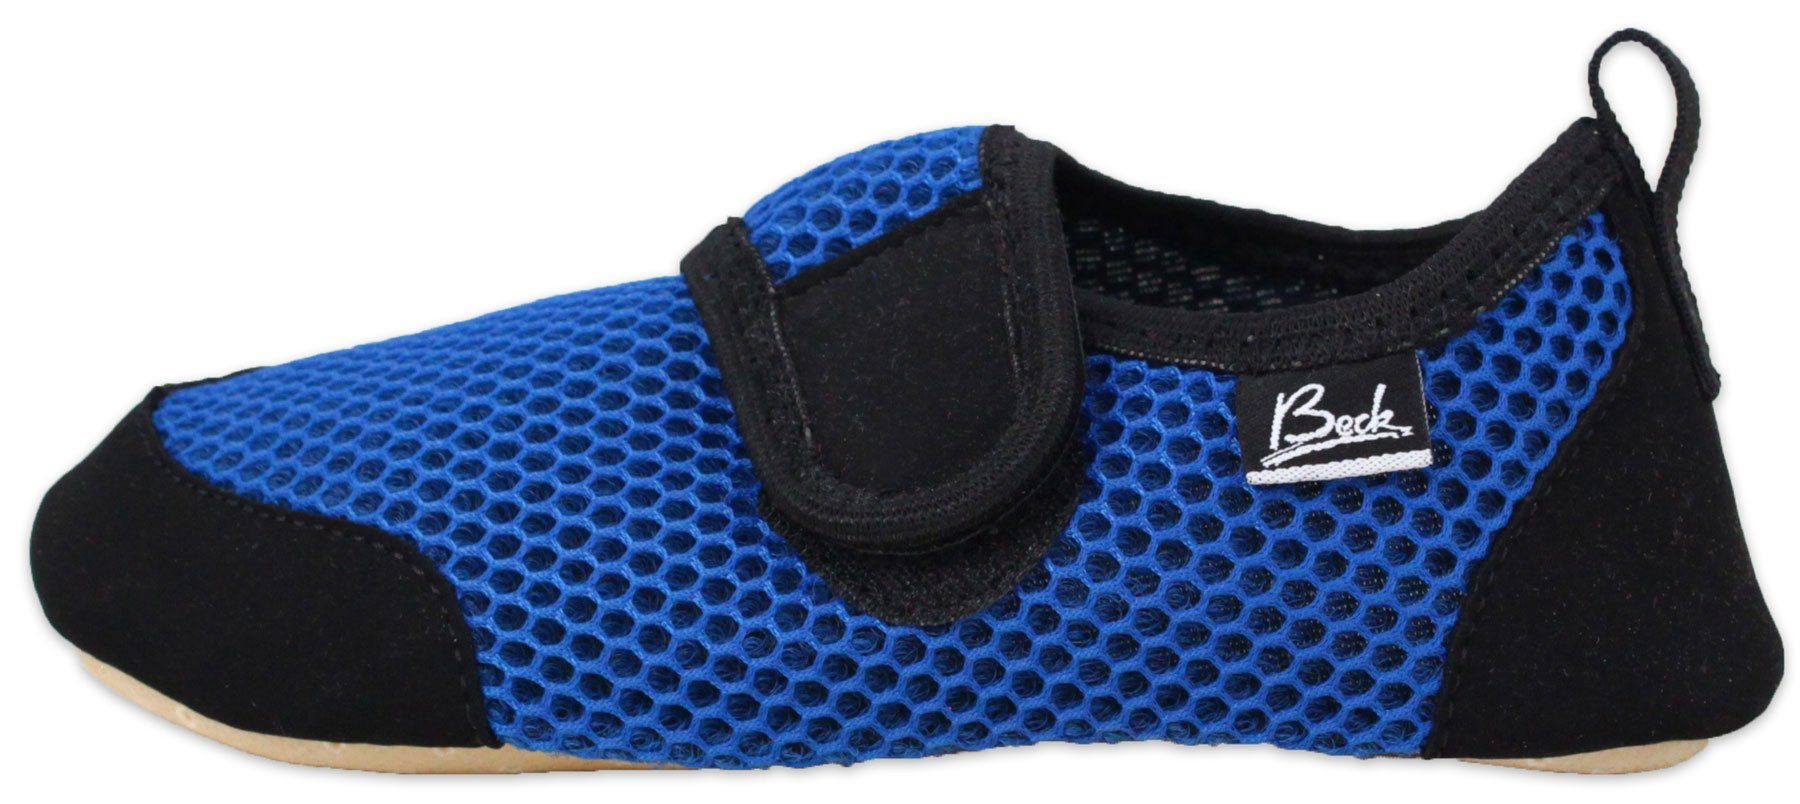 Beck BECK-BUDDIES - Indoor-Aktiv-Schuh mit atmungsaktiver Sohle Hausschuh Klettverschluss, Gefühl des Barfußlaufens, Gesunde Fußentwicklung blau